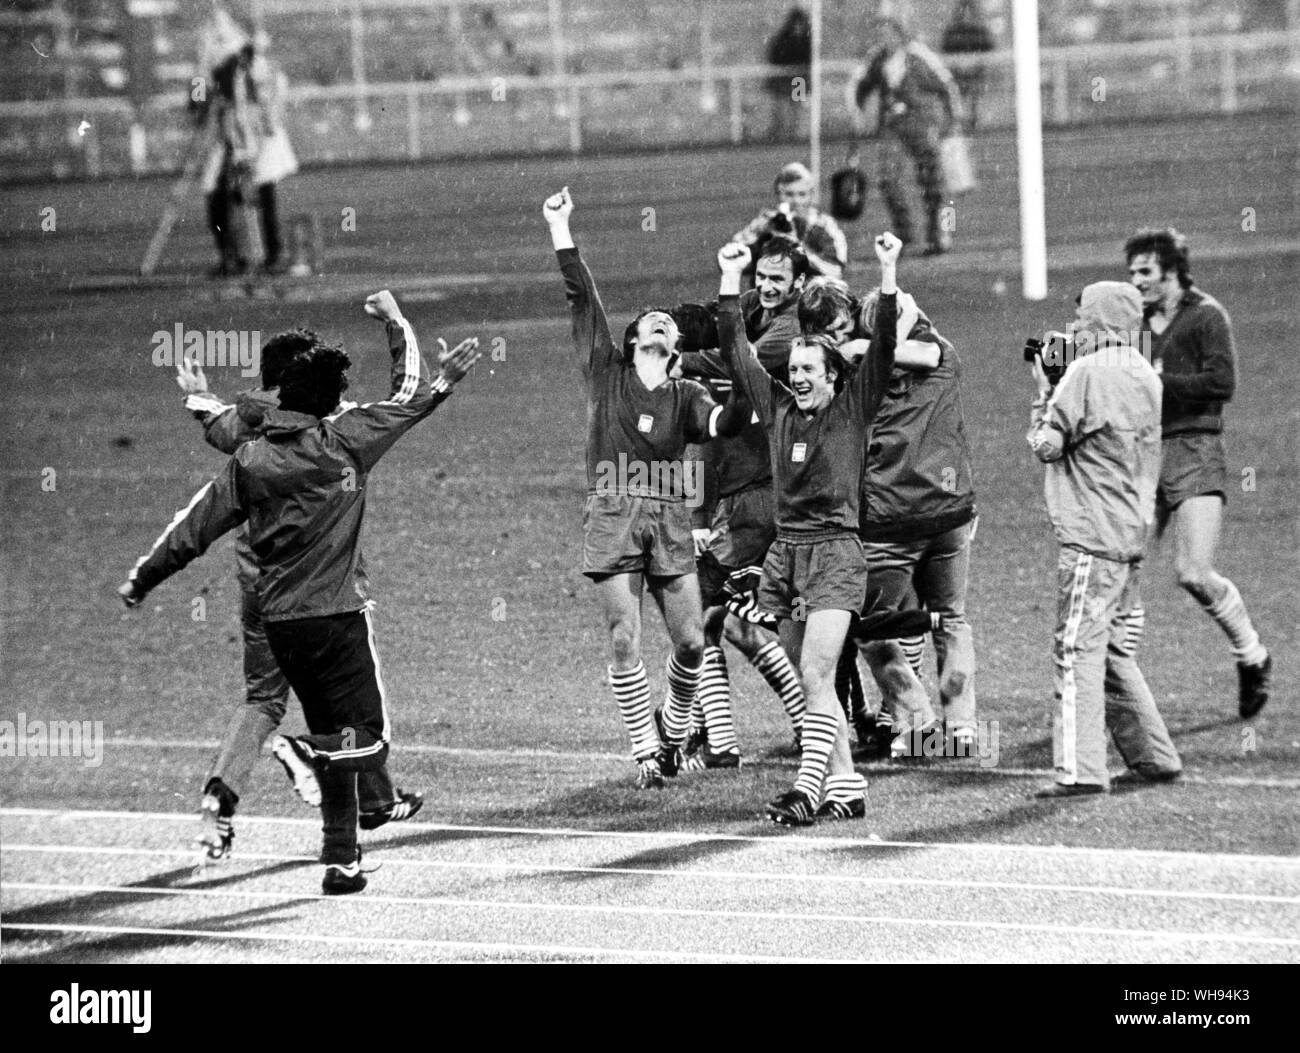 Septiembre 1972: Juegos Olímpicos de Munich: Polonia celebra su victoria por 2-1 sobre Hungría en la final de la competición de fútbol. Foto de stock